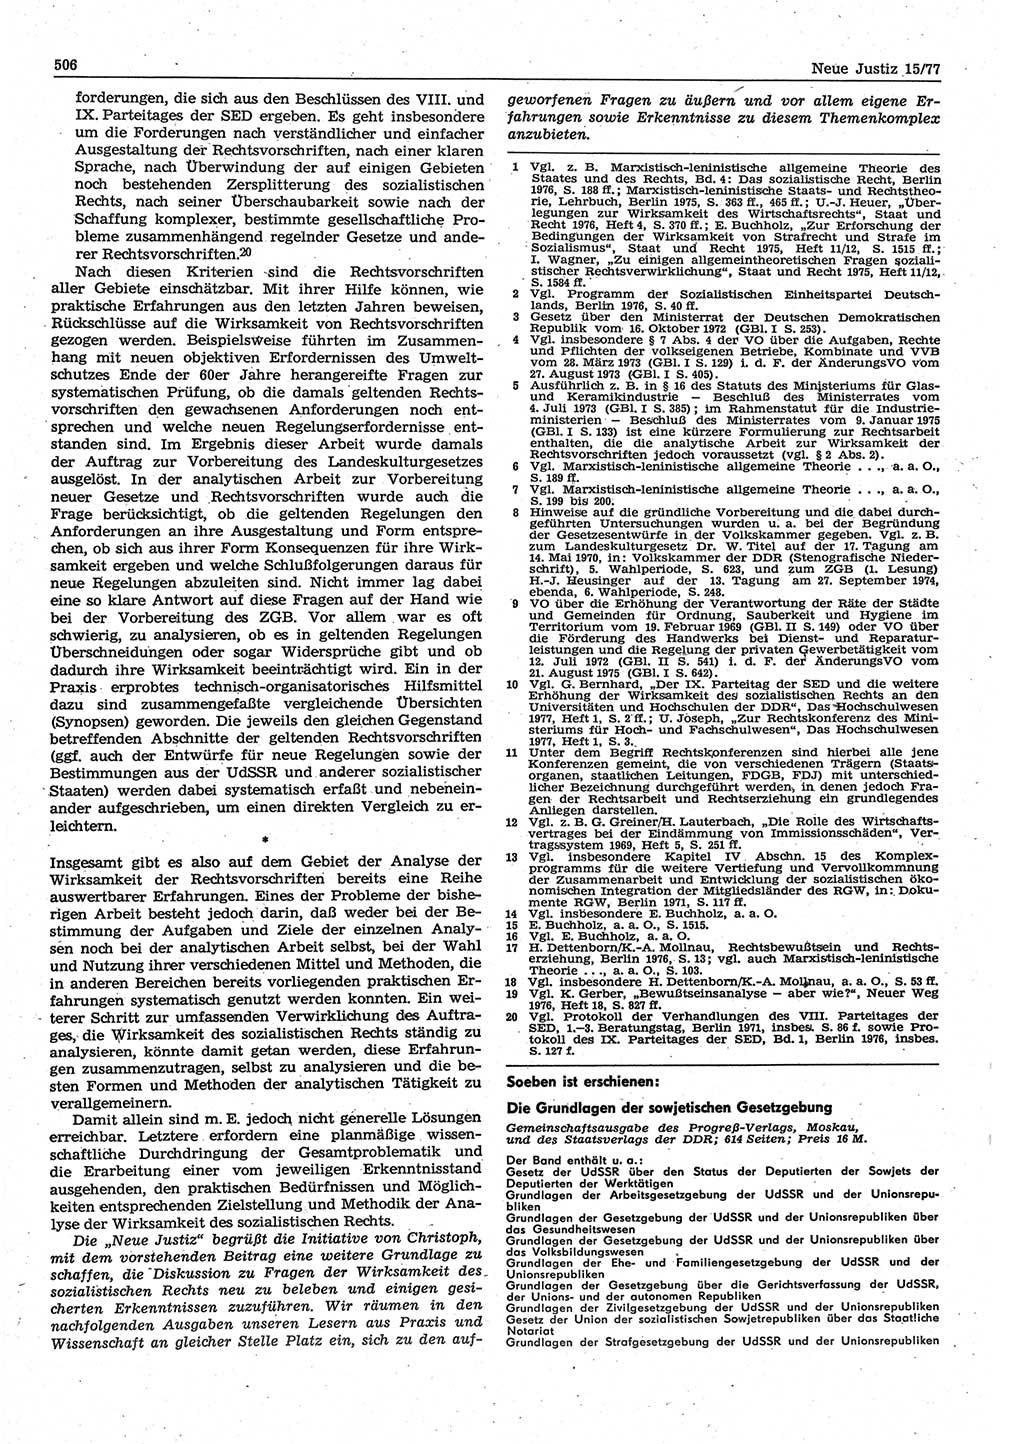 Neue Justiz (NJ), Zeitschrift für Recht und Rechtswissenschaft-Zeitschrift, sozialistisches Recht und Gesetzlichkeit, 31. Jahrgang 1977, Seite 506 (NJ DDR 1977, S. 506)